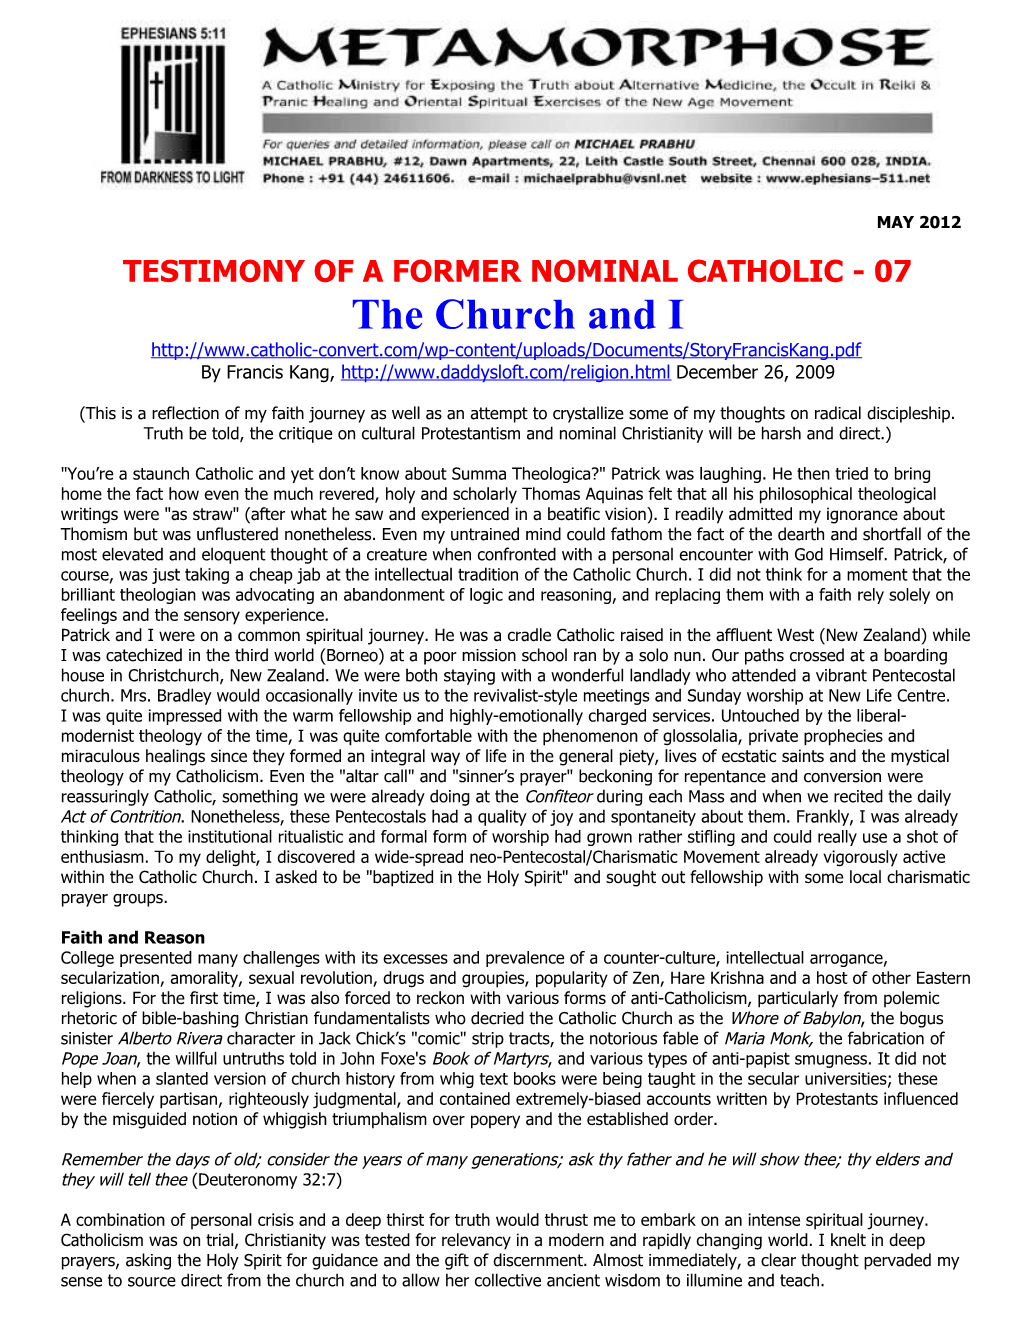 Testimony of a Former Nominal Catholic - 07